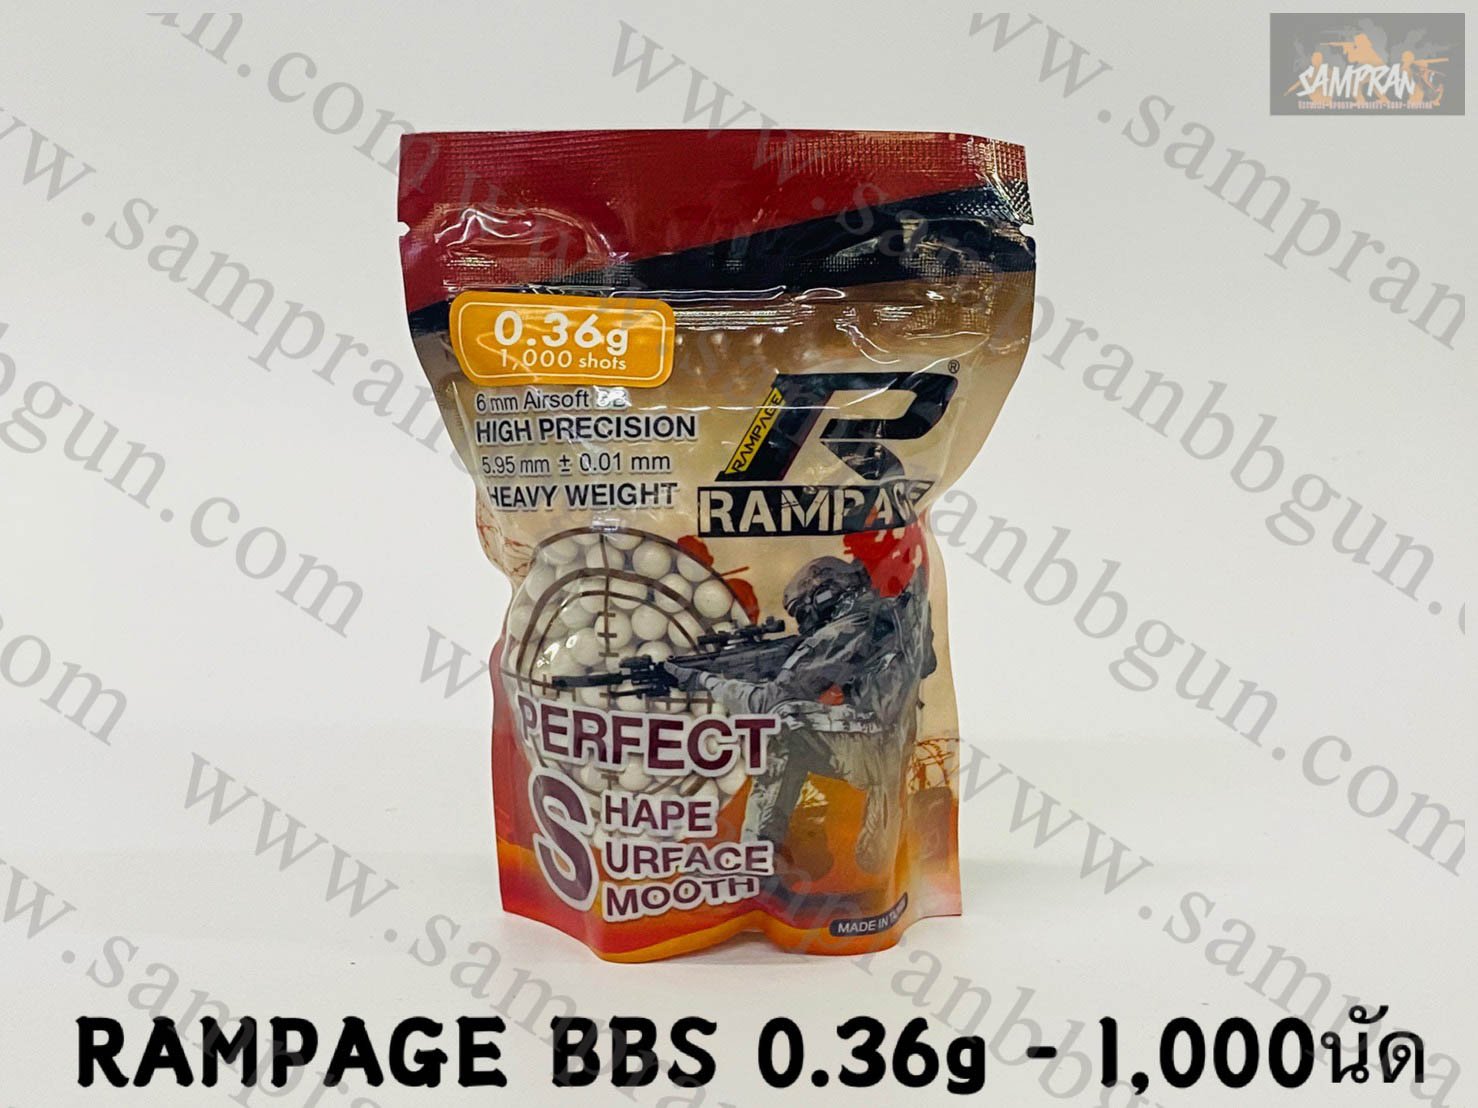 ลูกกระสุน RAMPAGE 0.36g (1000นัด) made in taiwan